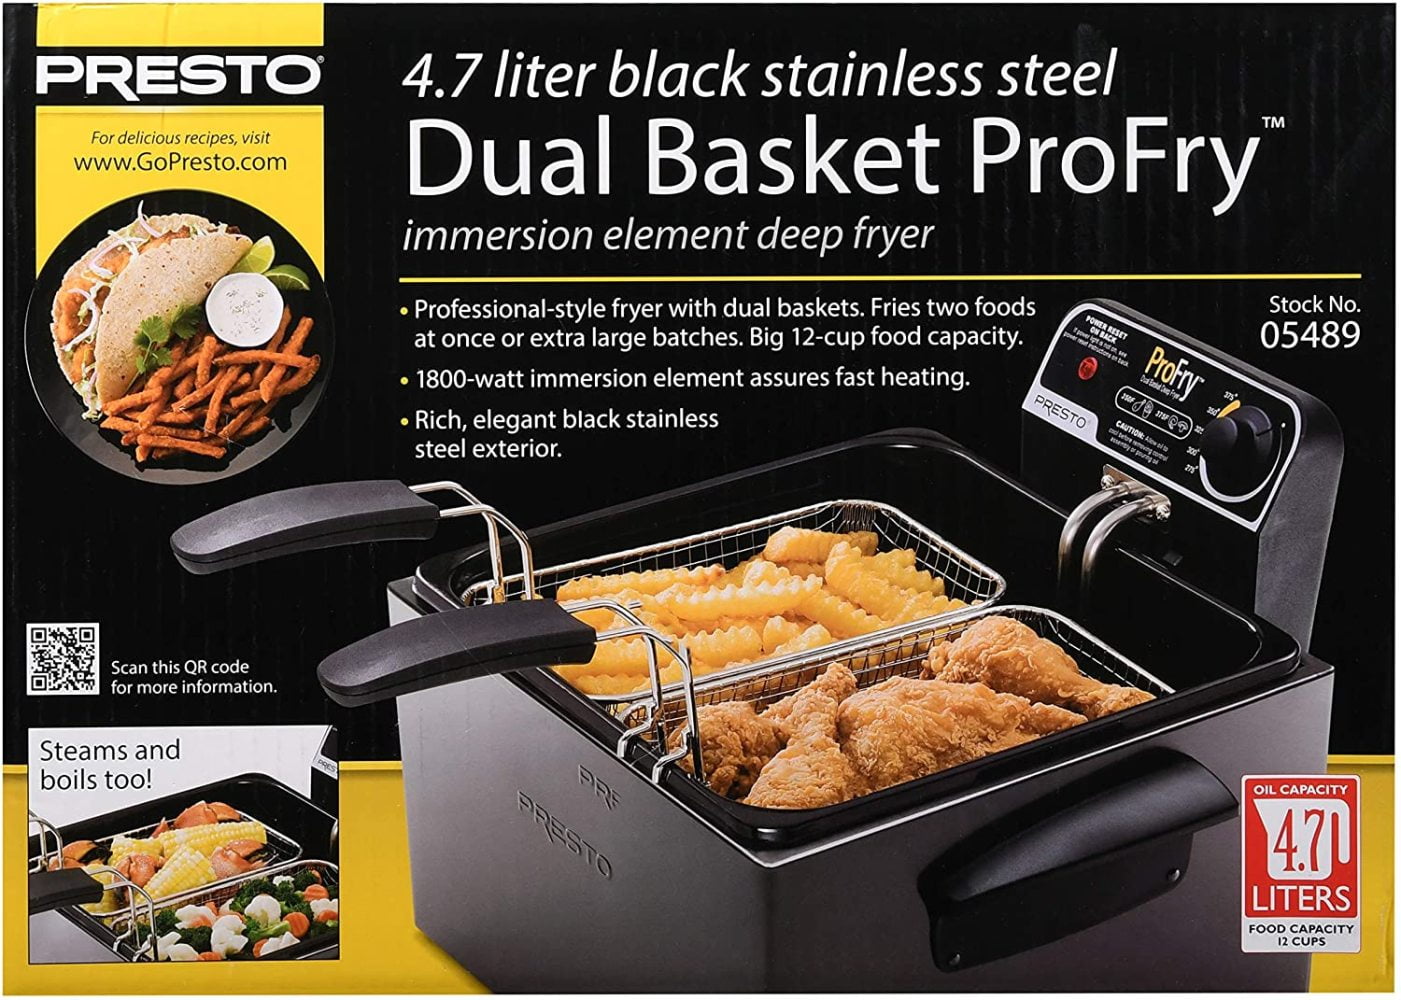 Presto Black Stainless Steel Dual Basket ProFry Deep Fryer